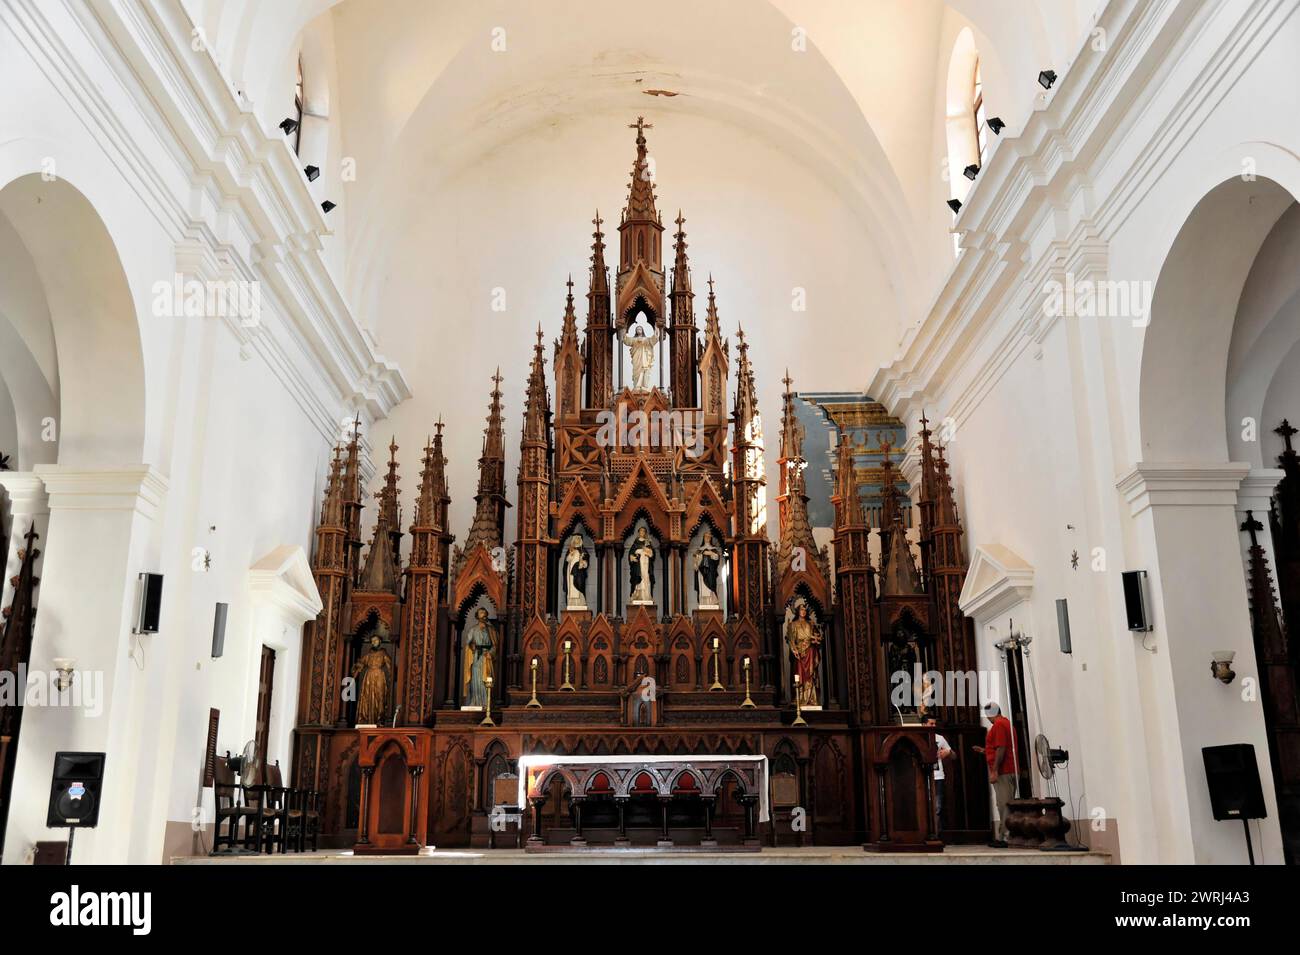 Majestueux maître-autel de style gothique à l'intérieur d'une église aux riches décorations, Trinidad, Cuba, Amérique centrale Banque D'Images